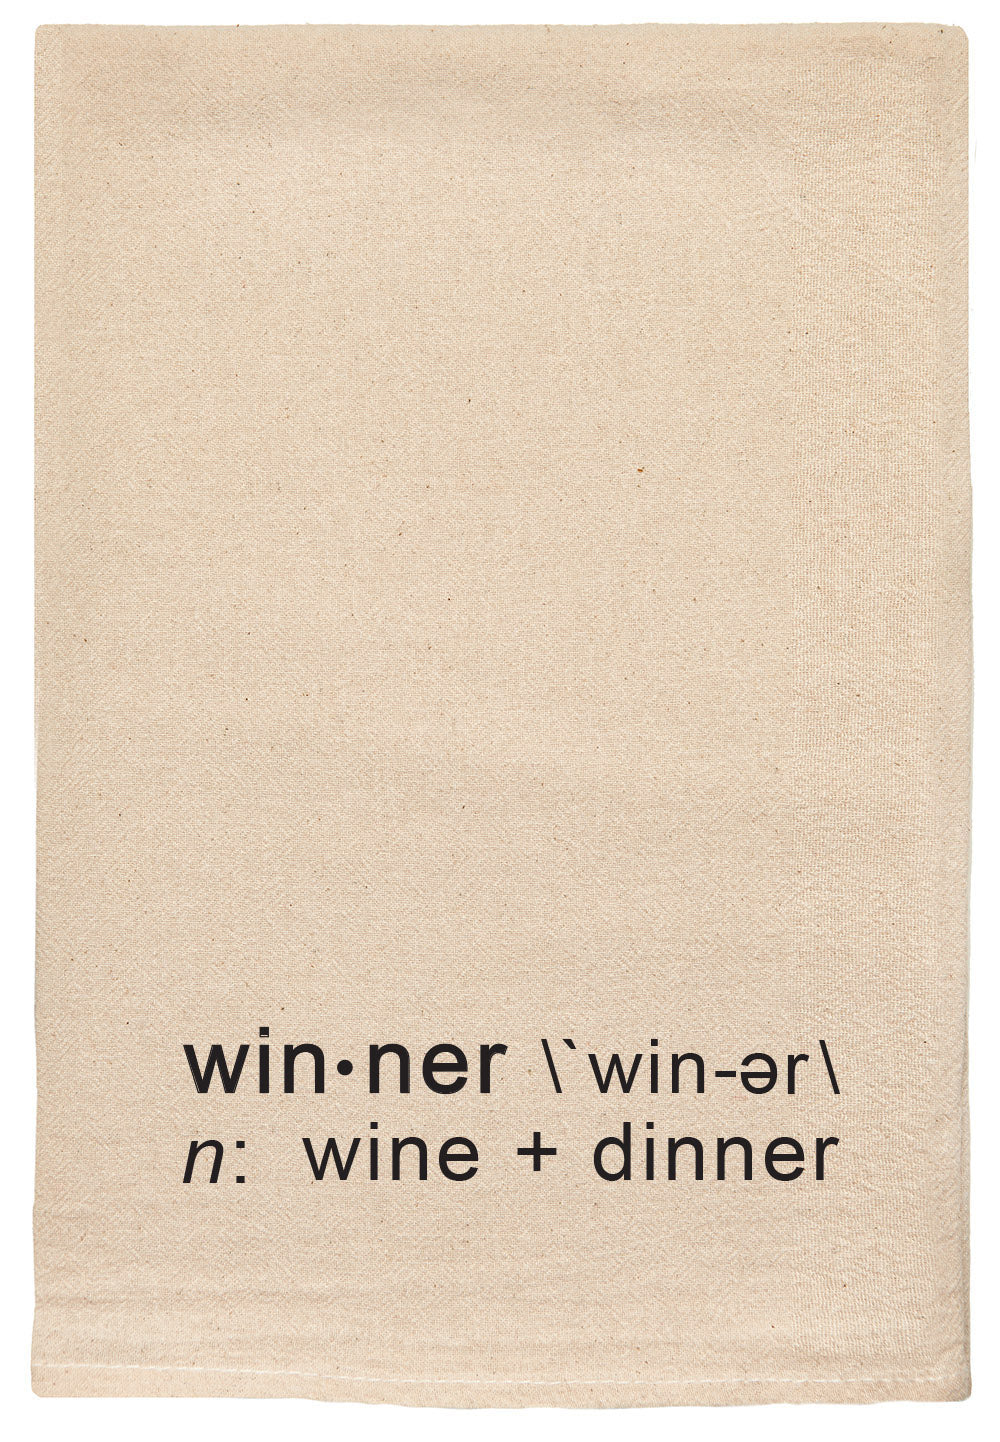 Winner. Wine + dinner